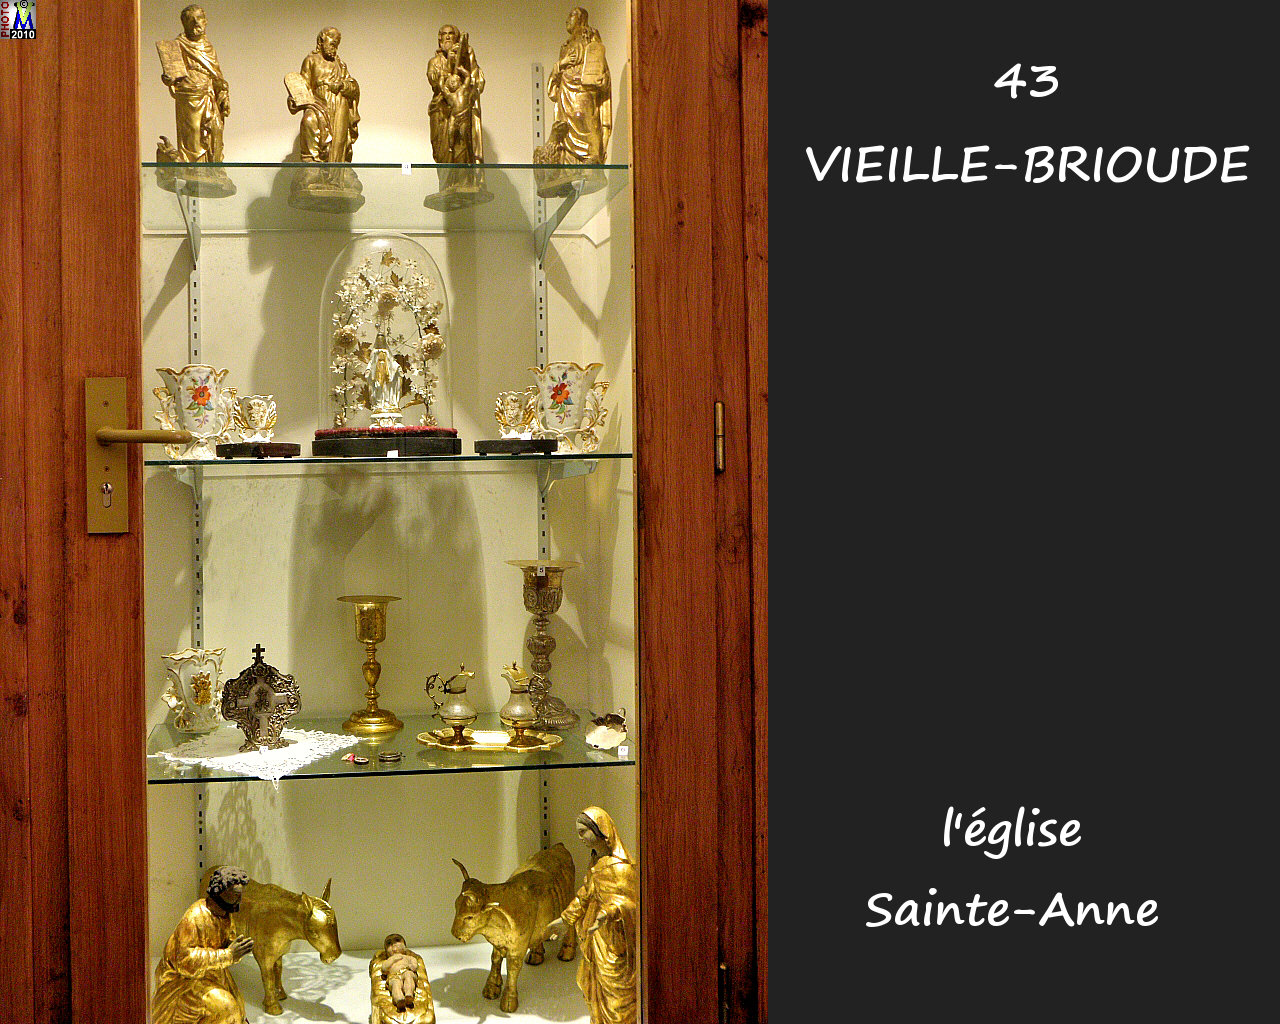 43VIEILLE-BRIOUDE_eglise_270.jpg